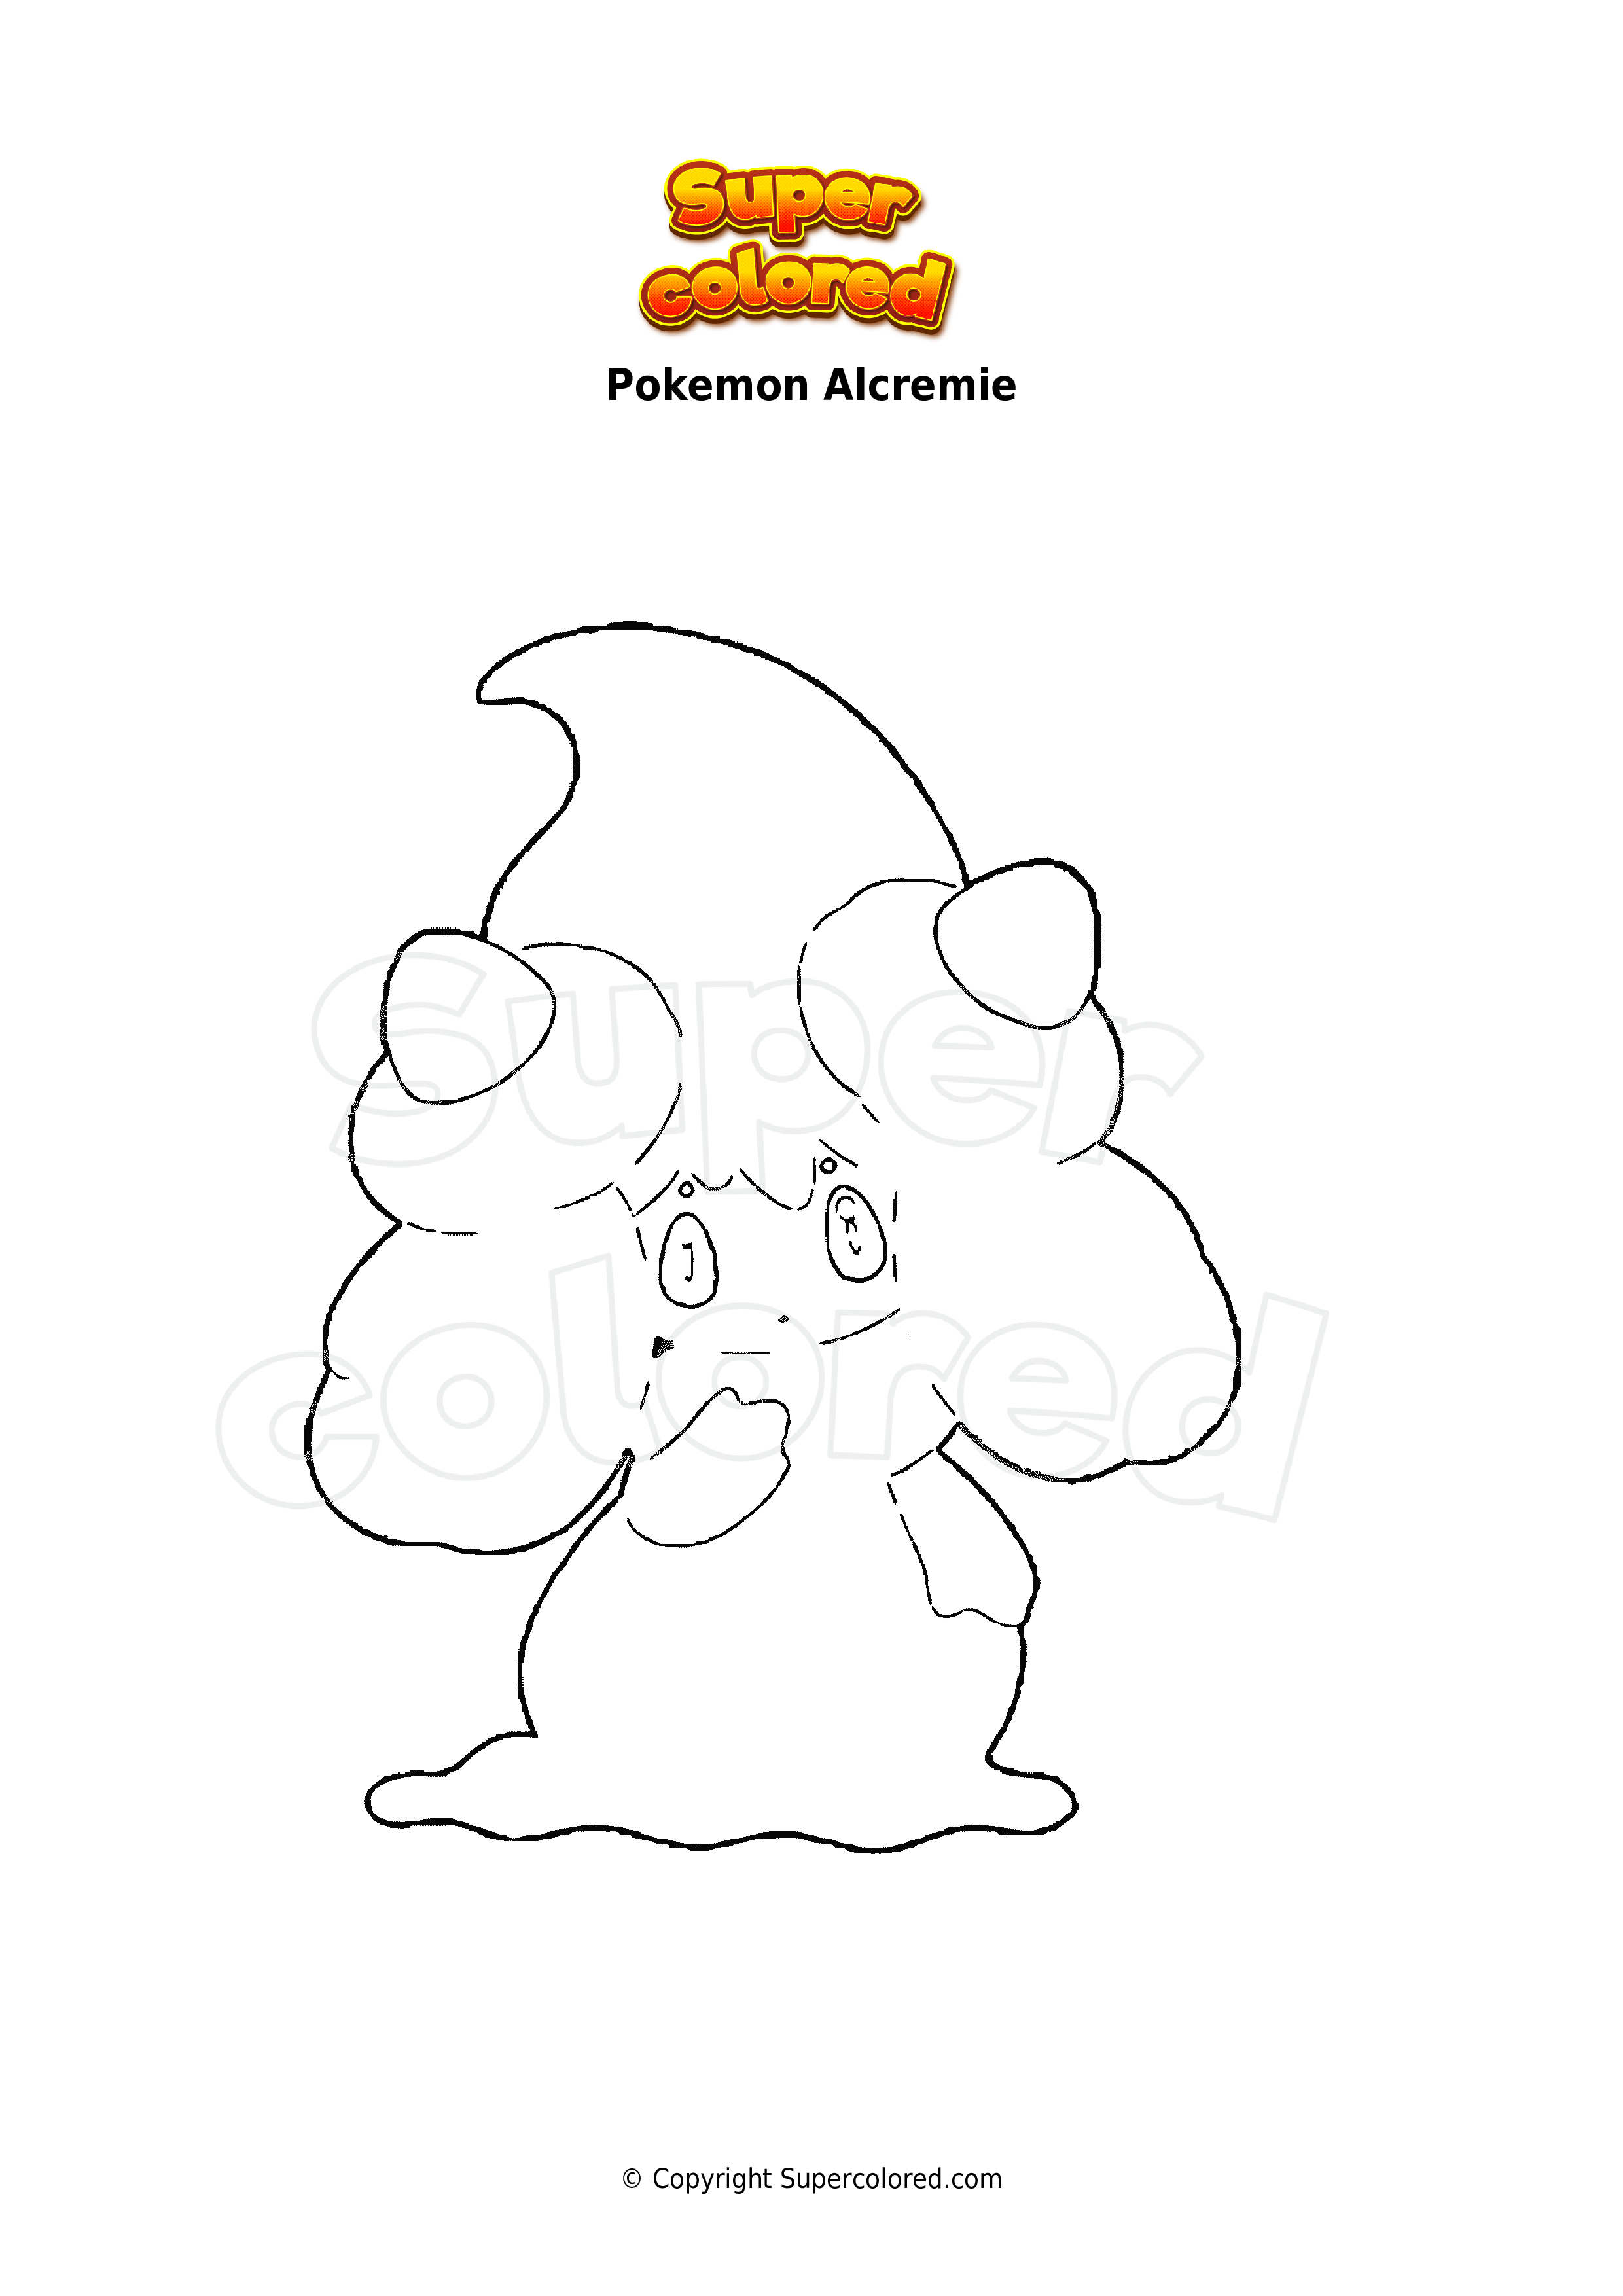 Dibujo para colorear Pokemon Alcremie - Supercolored.com